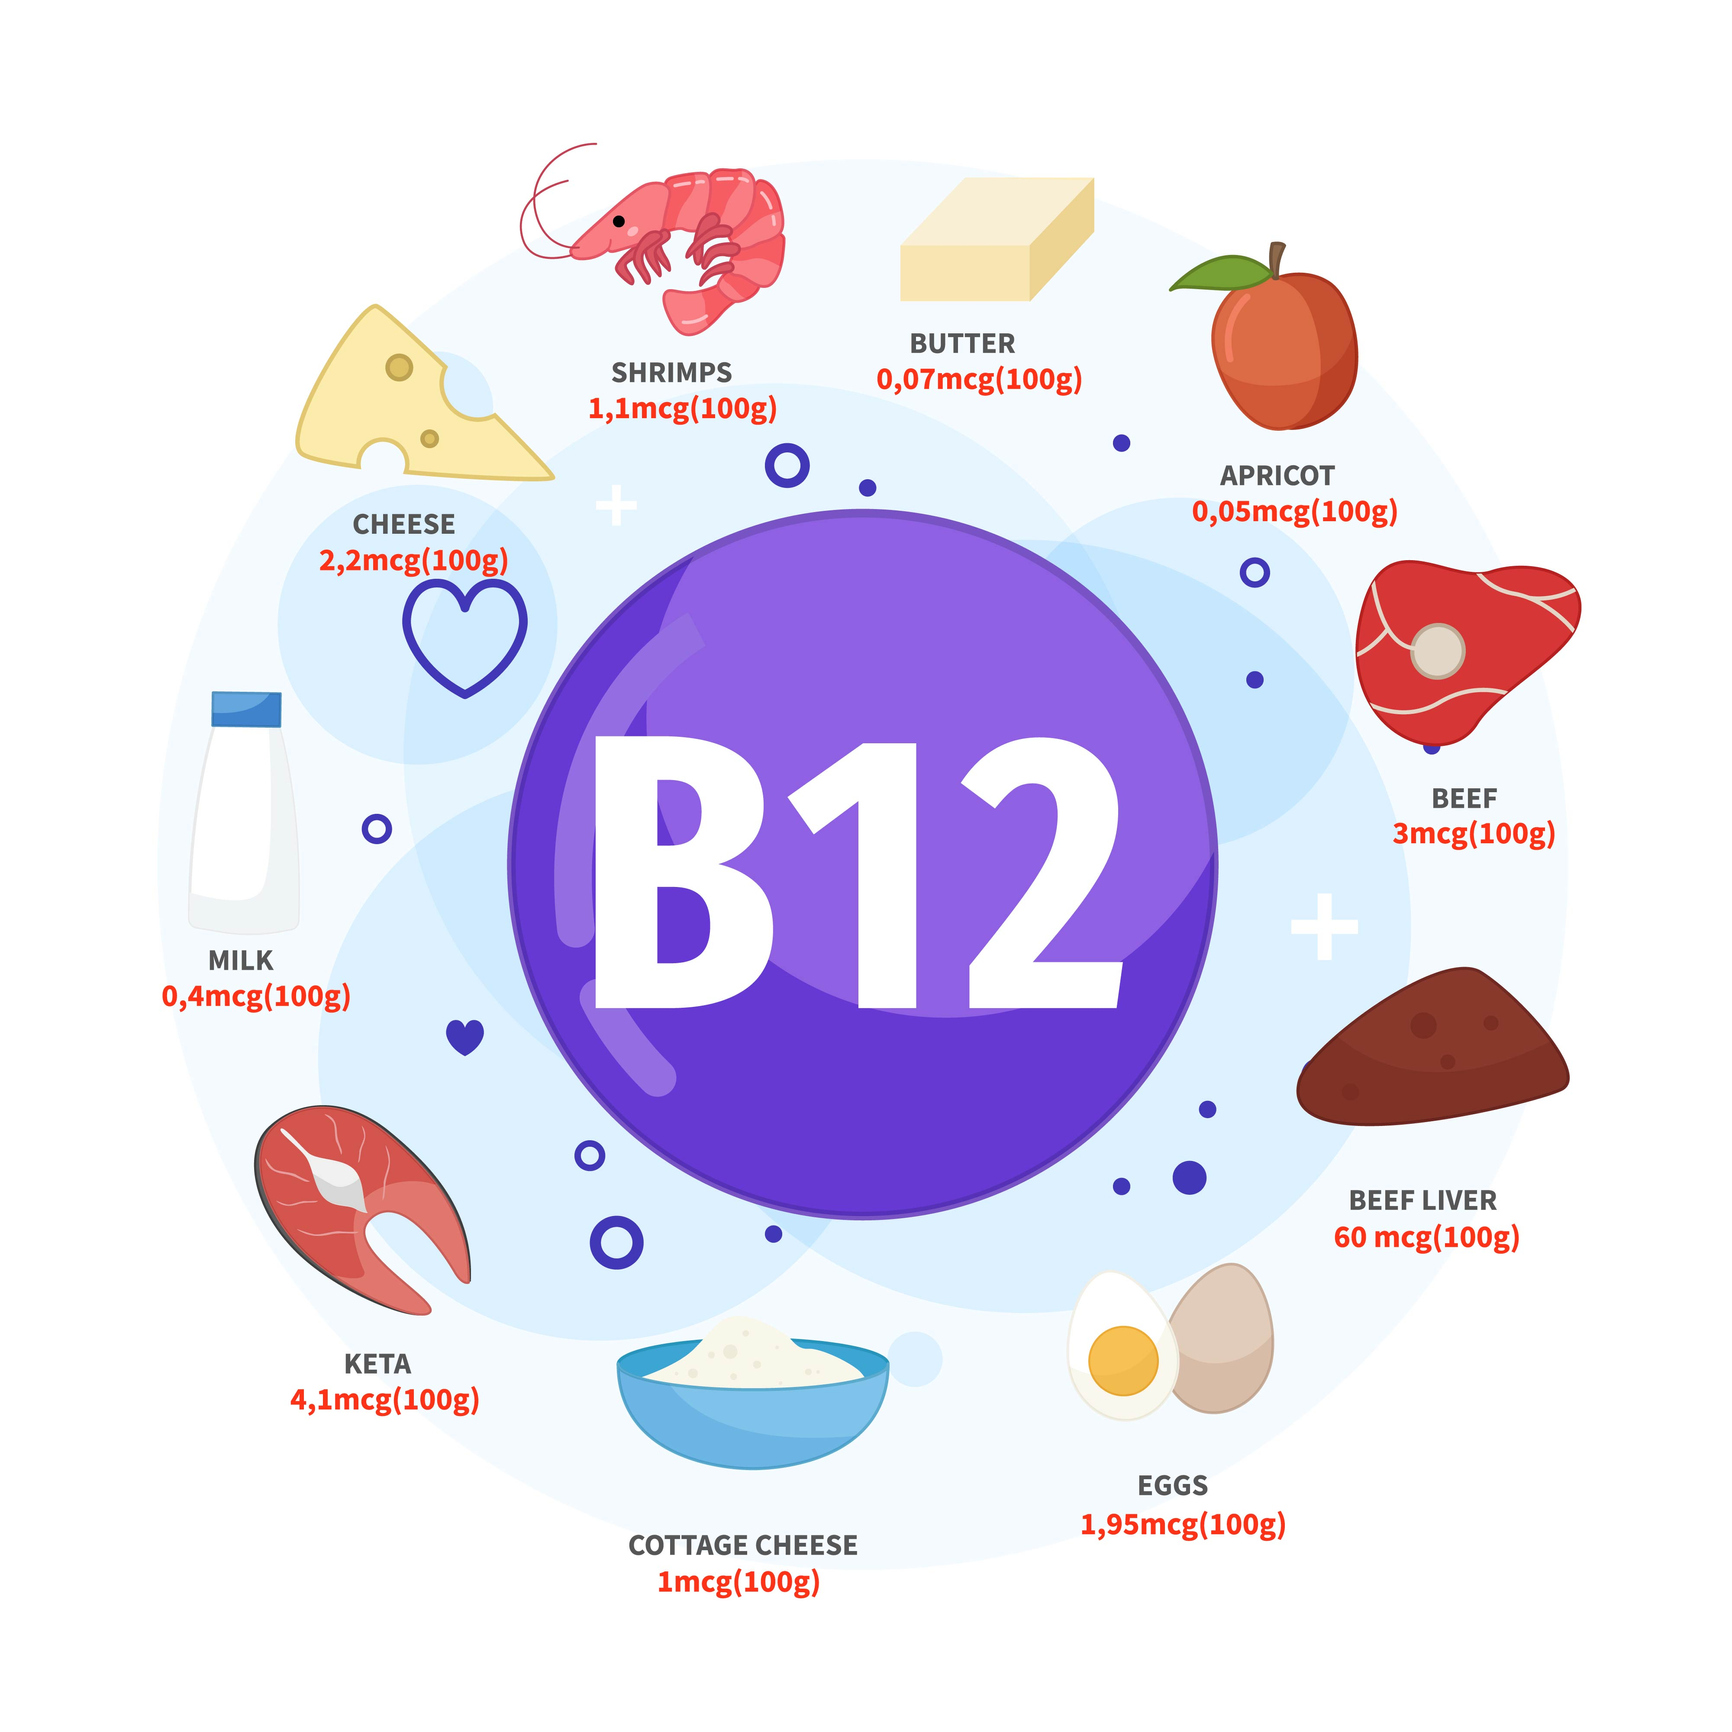 Medzi najlepšie zdroje vitamínu B12 patrí maslo, marhuľa, hovädzie mäso, hovädzia pečeň, vajcia a cottage syr, keta, mlieko, syr, krevety. Zdroj foto: Getty Images